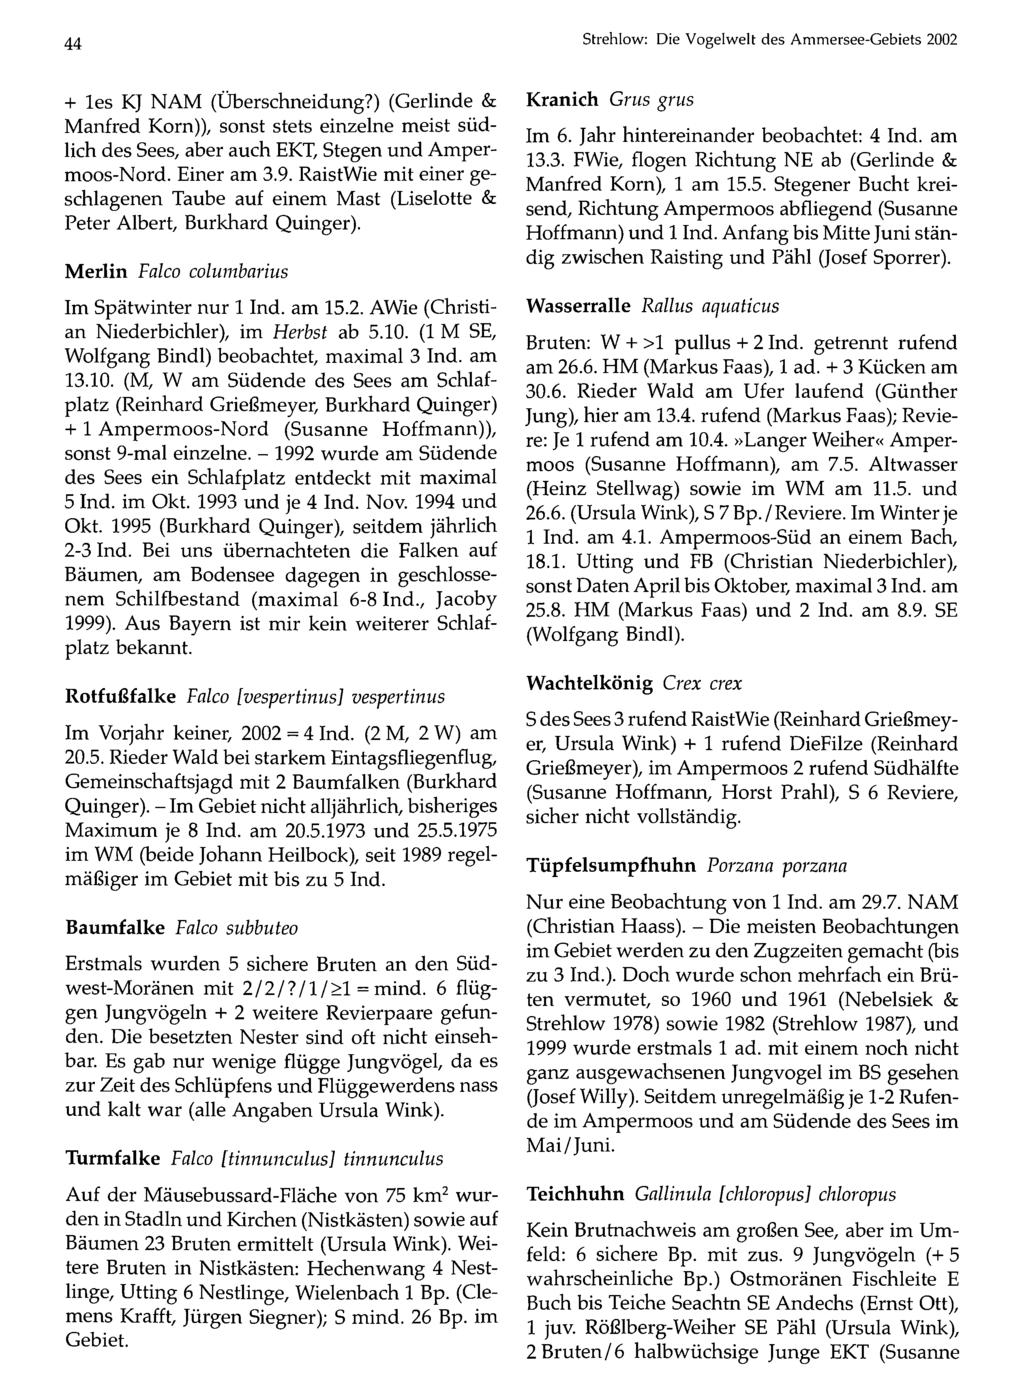 44 Ornithologische Gesellschaft Bayern, download unter Strehlow: www.biologiezentrum.at Die Vogelwelt des Ammersee-Gebiets 2002 + les KJ NAM (Überschneidung?